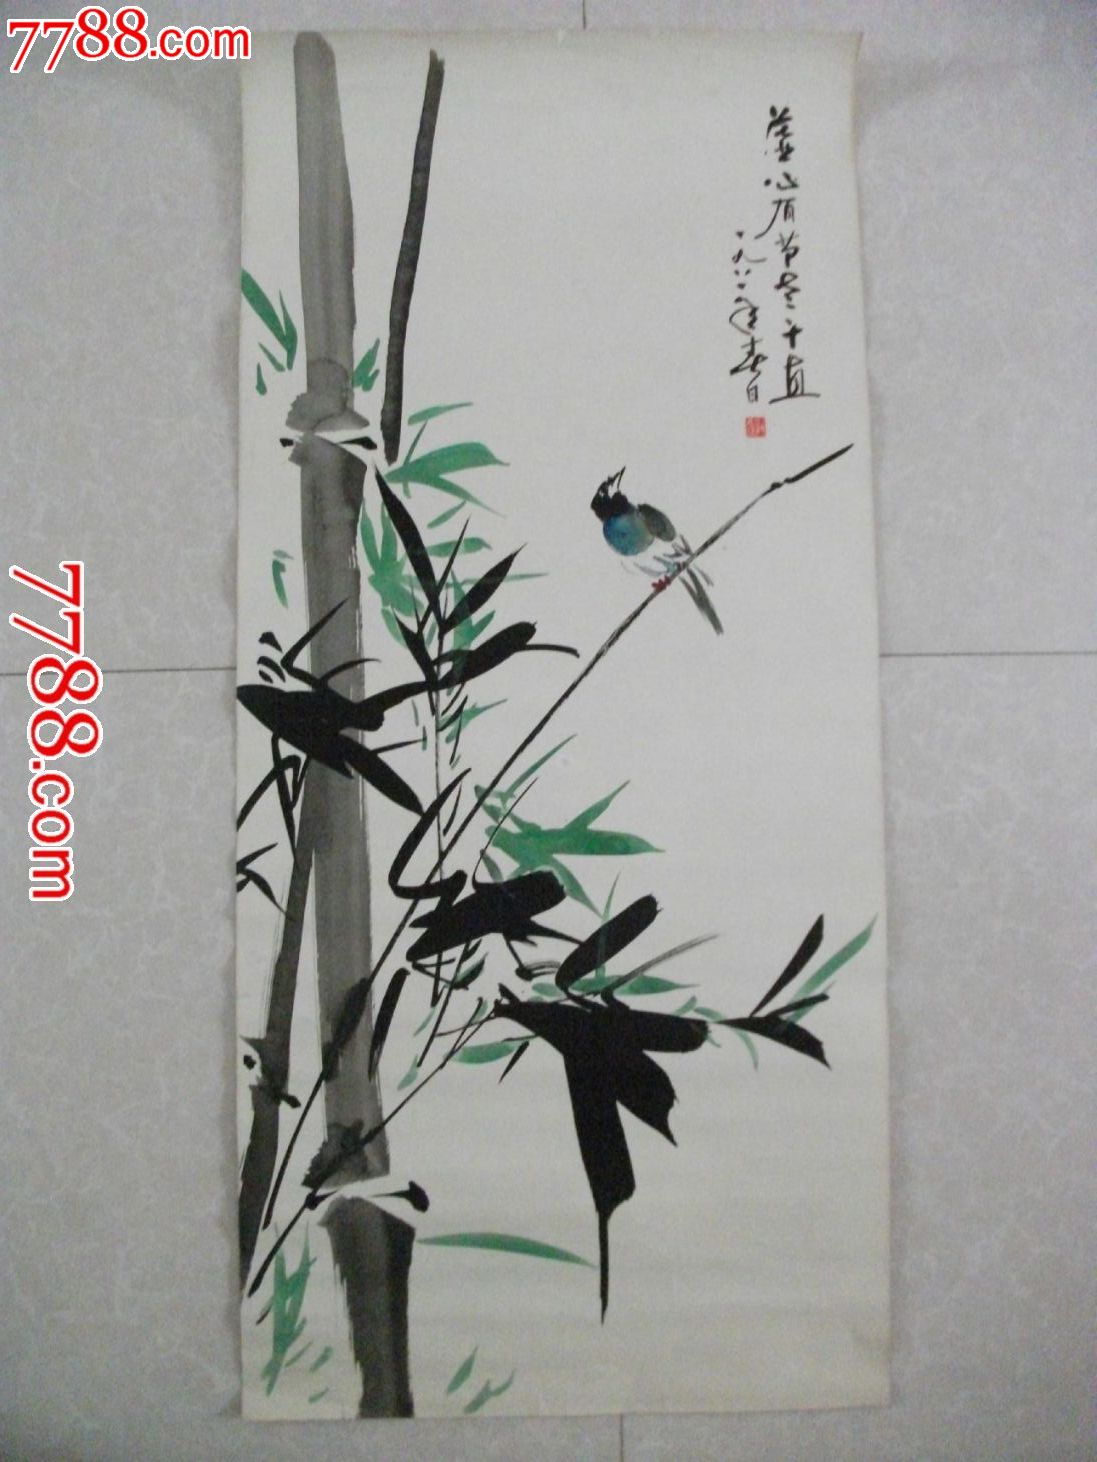 竹子-价格:450元-se17050220-水粉/水彩原画-零售-7788收藏